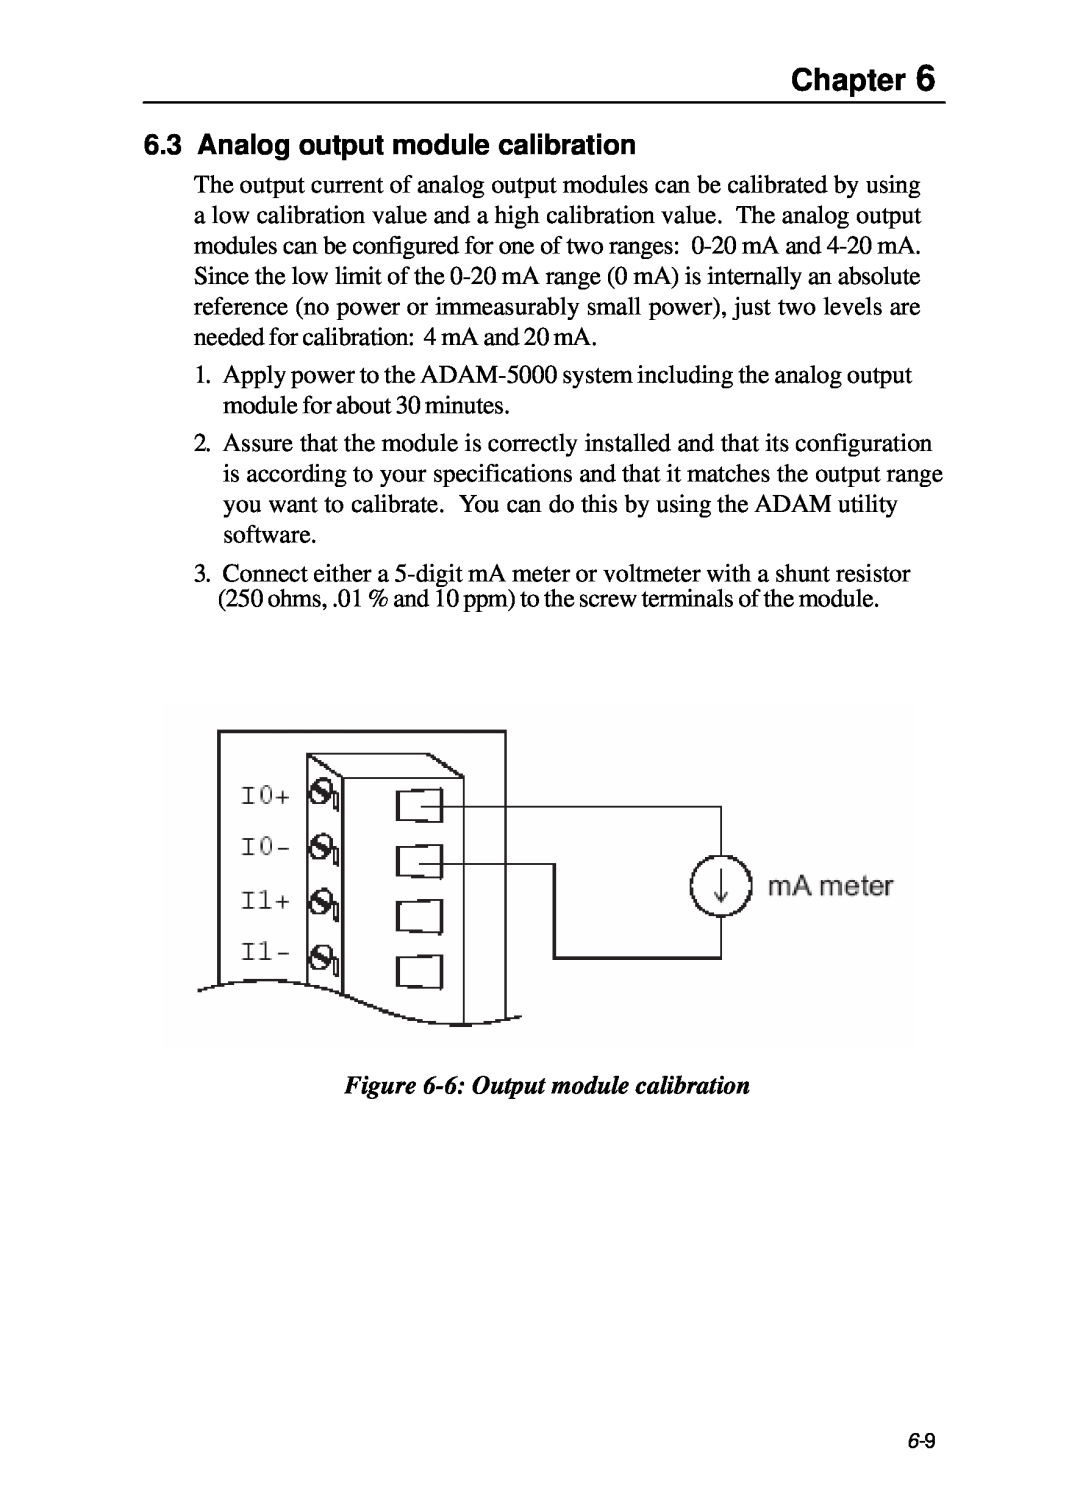 B&B Electronics 5000 Series user manual Analog output module calibration, 6 Output module calibration, Chapter 